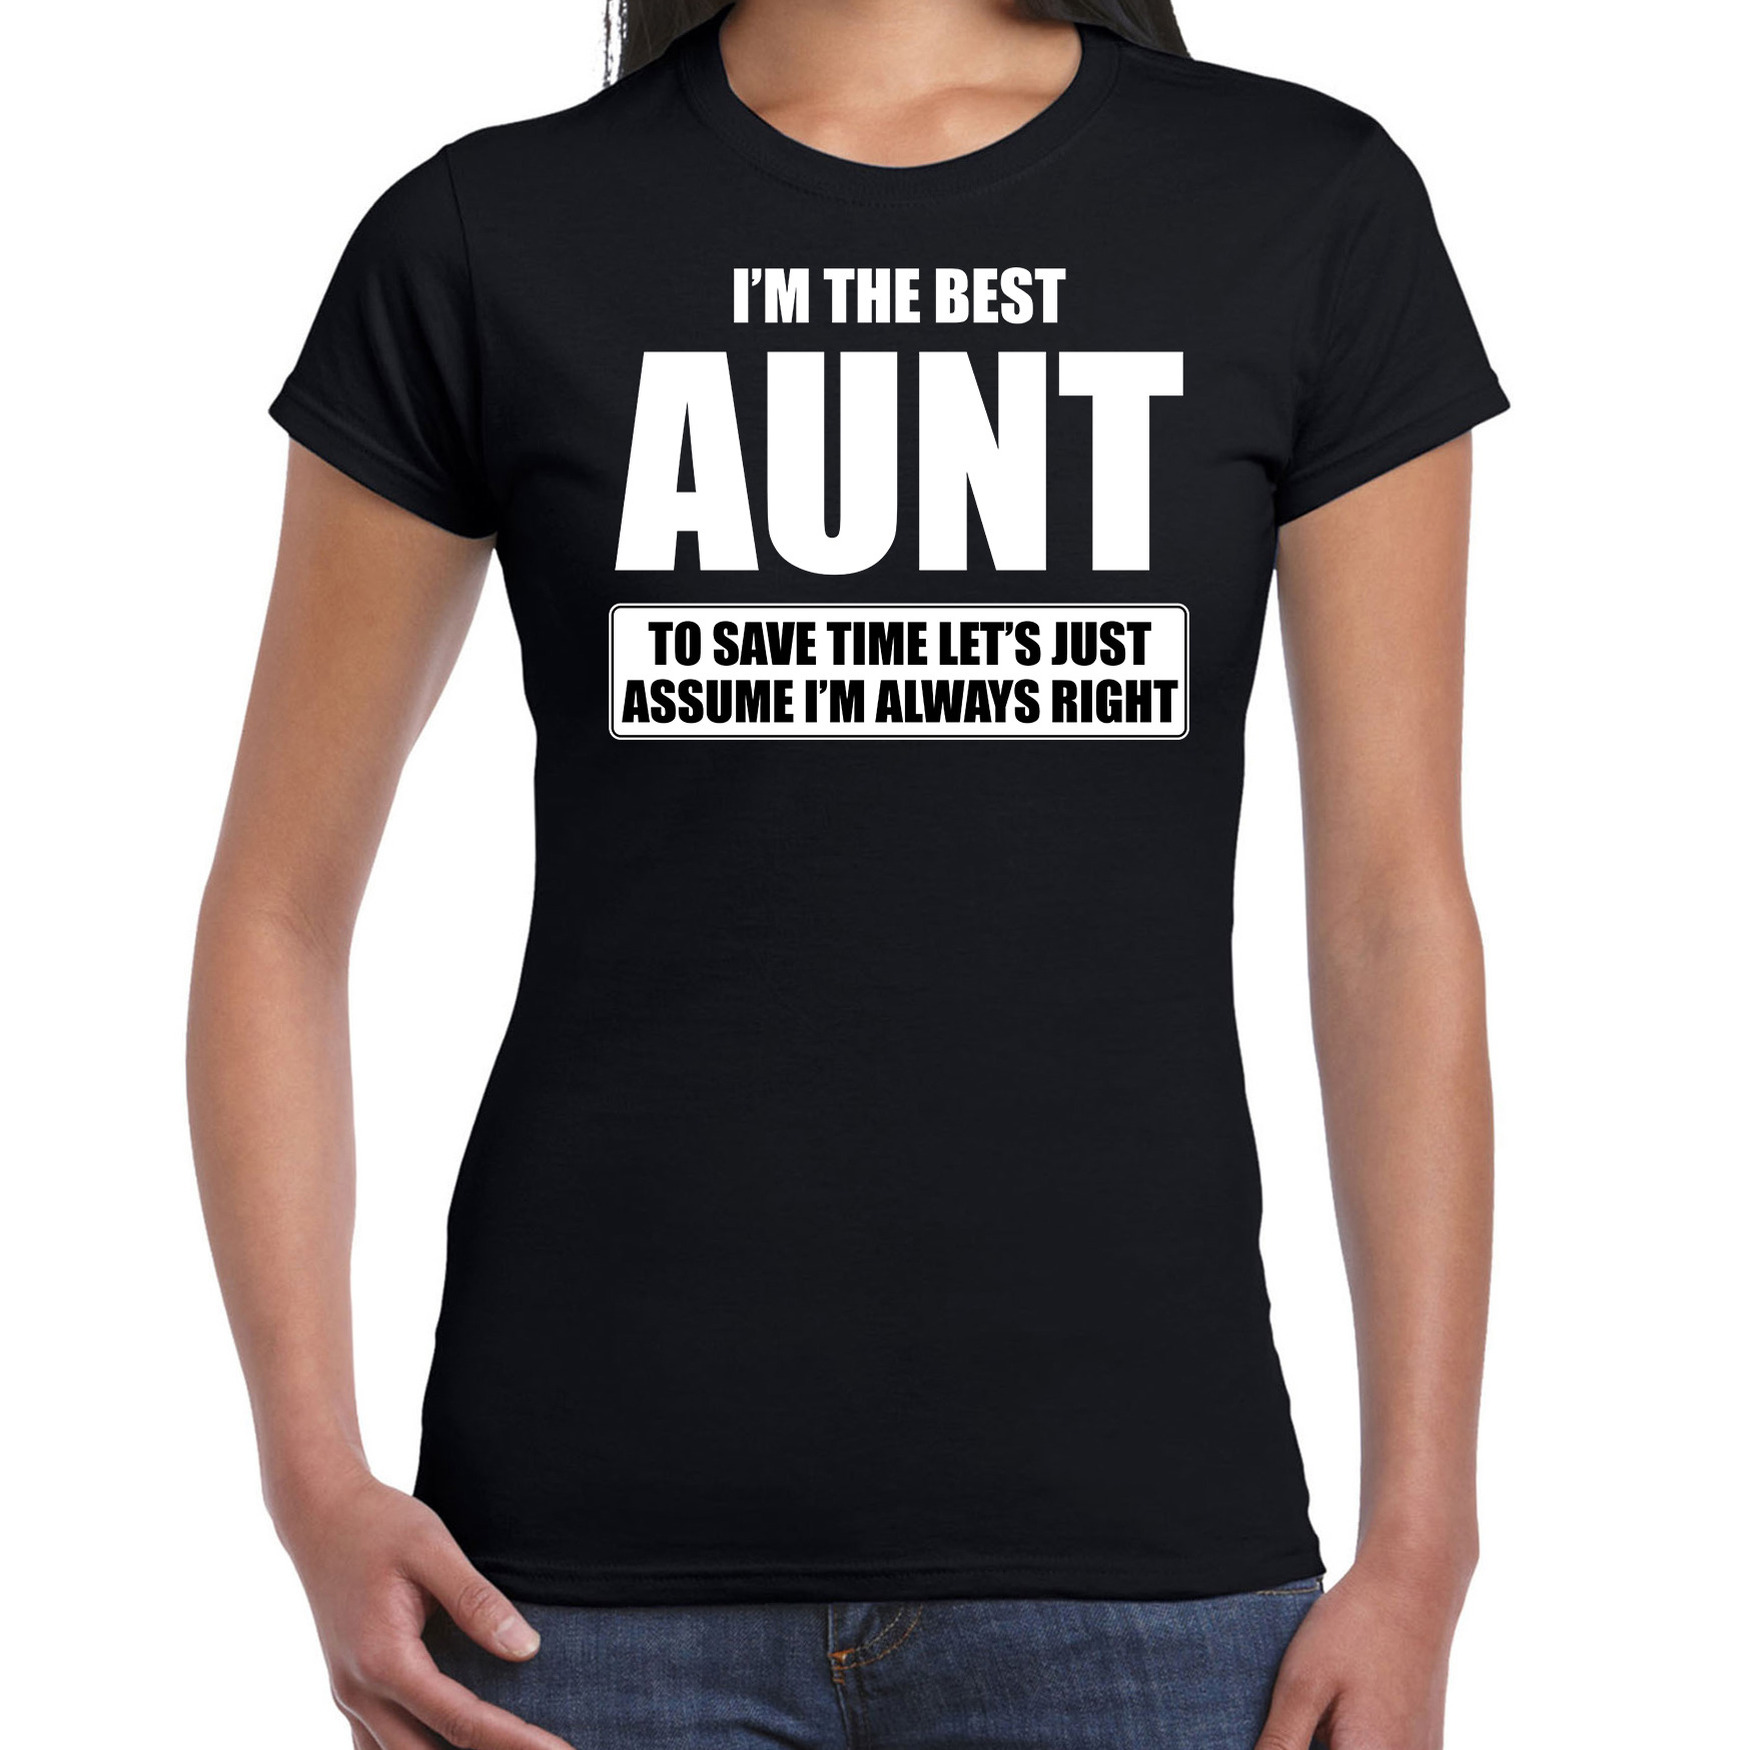 I'm the best aunt t-shirt zwart dames - De beste tante cadeau